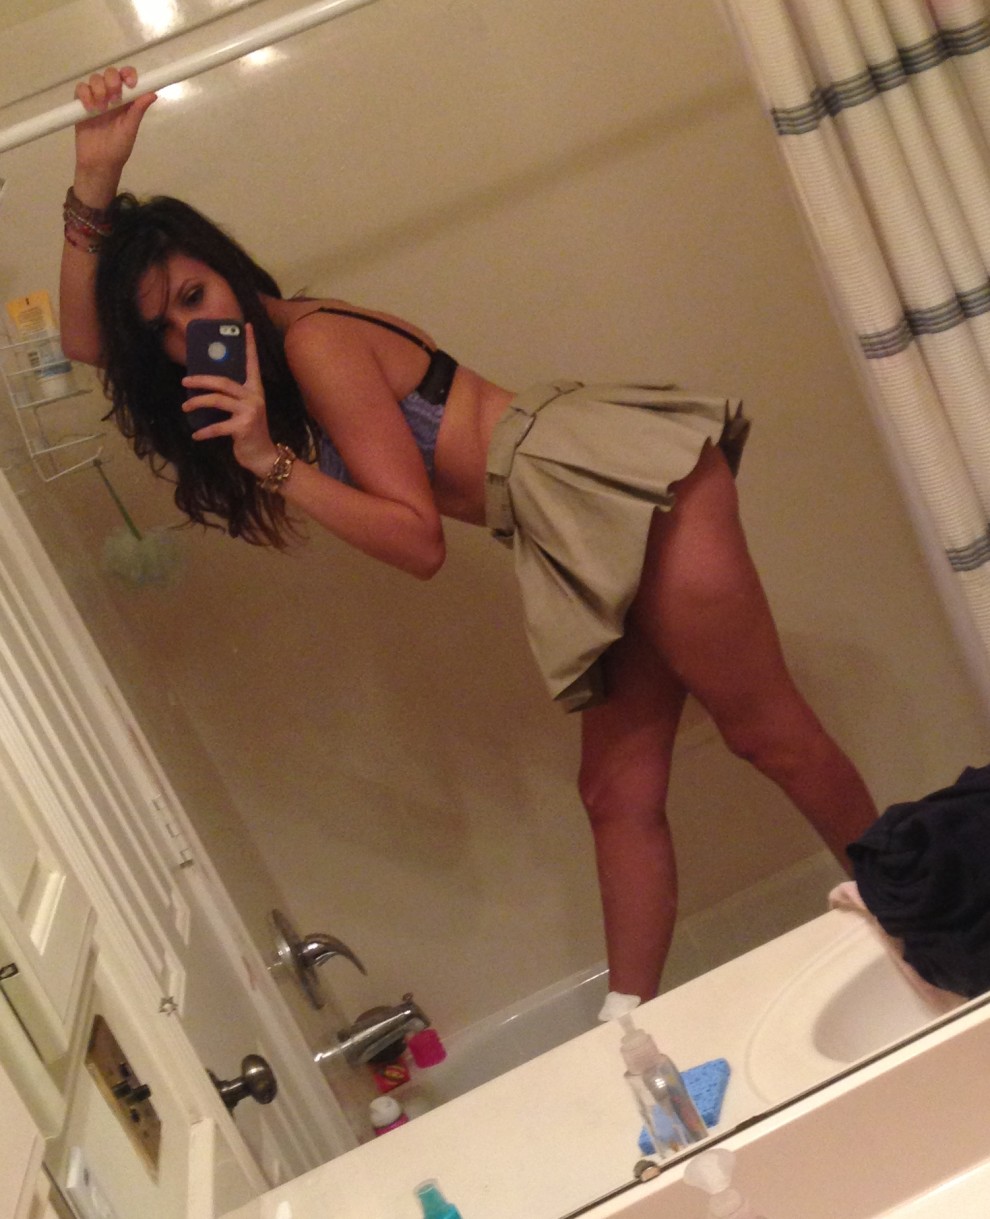 Khaki skirt in the shower